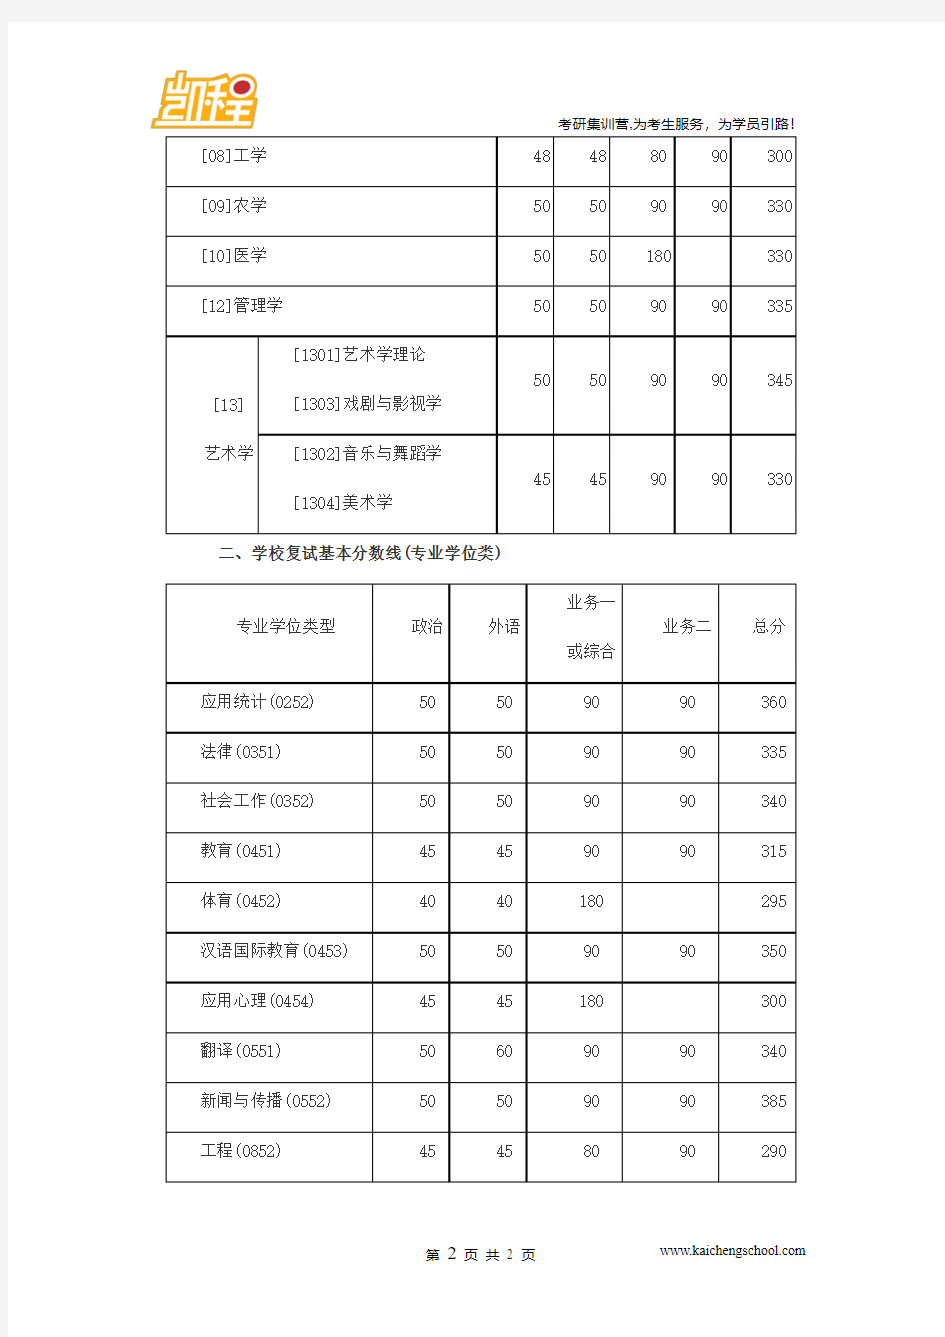 2015年北京师范大学新闻与传播硕士考研复试分数线是385分(专业学位类)